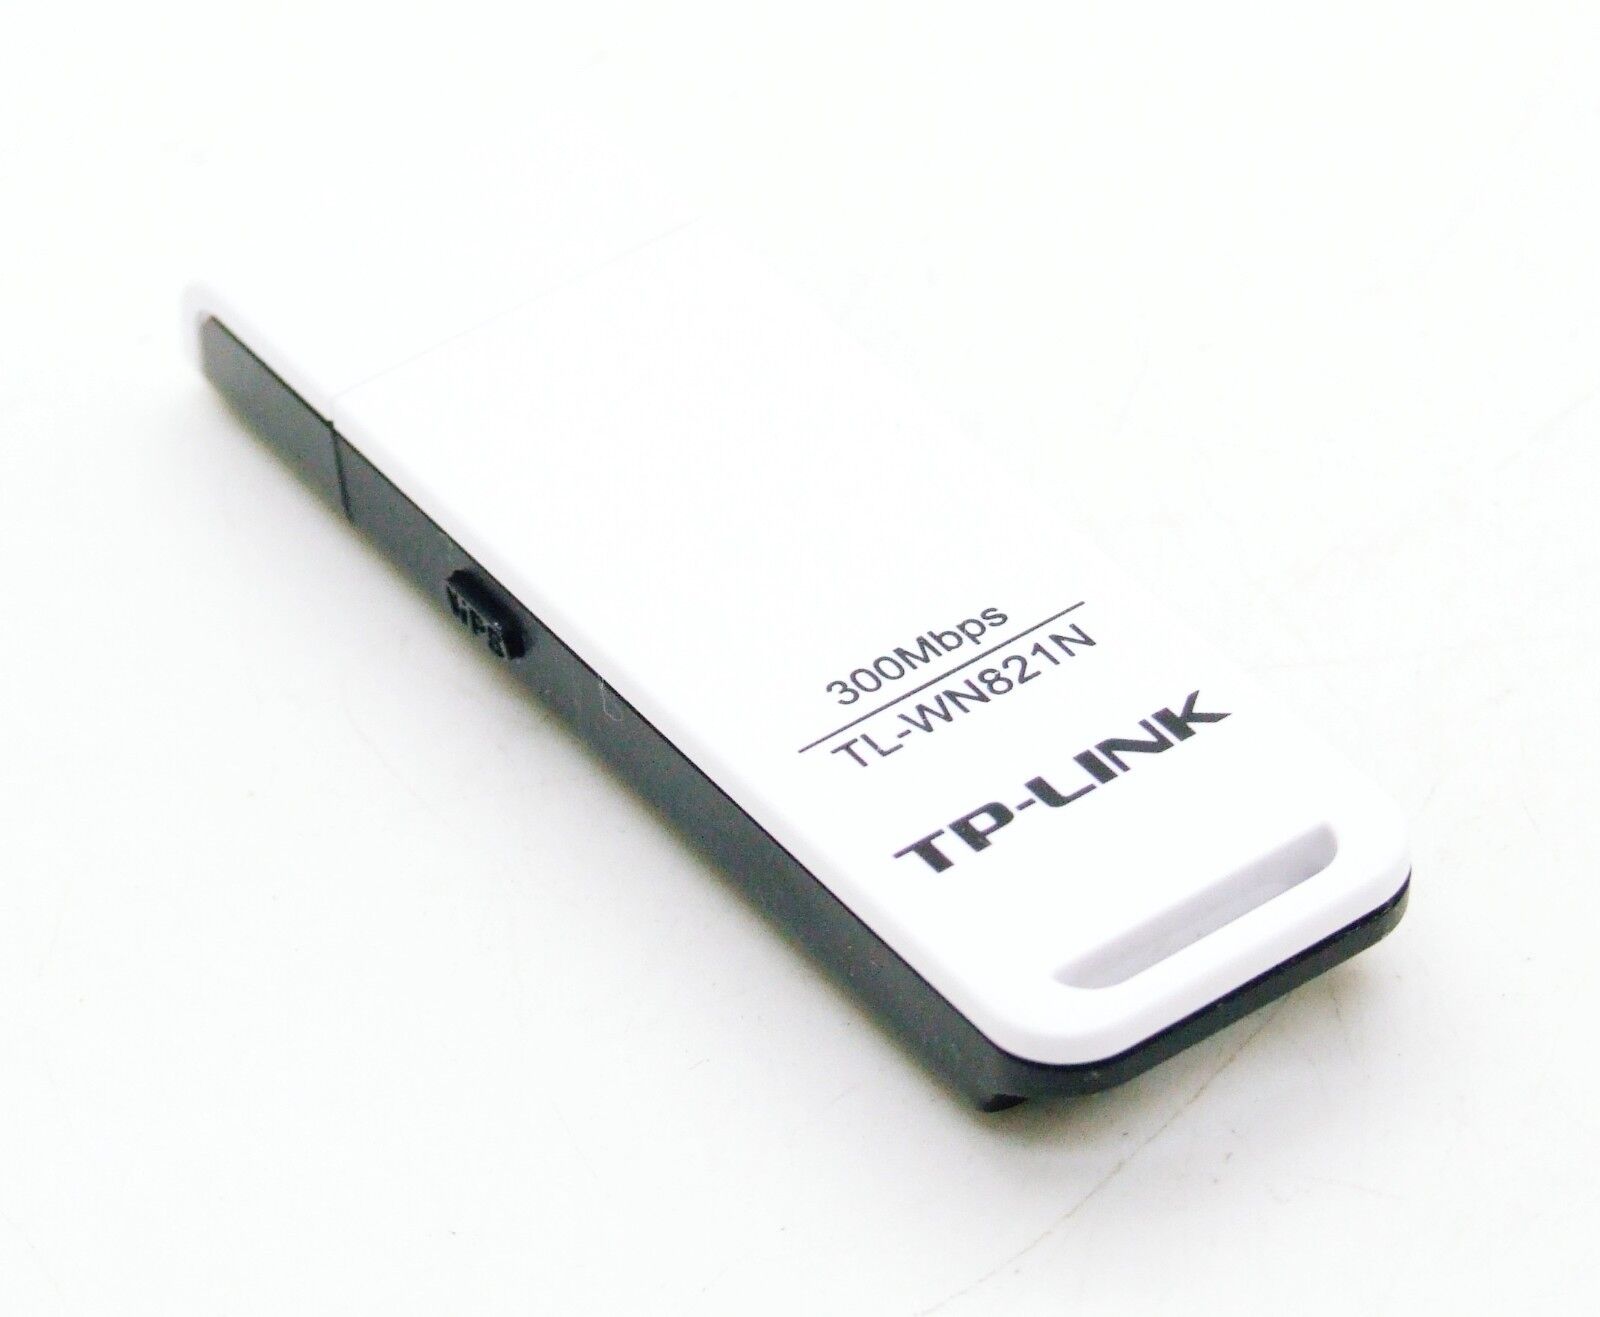 TP-LINK Wi-Fi Stick TL-WN821N USB Wi-Fi Adapter Wifi Dongle Wireless Stick 300Mbit